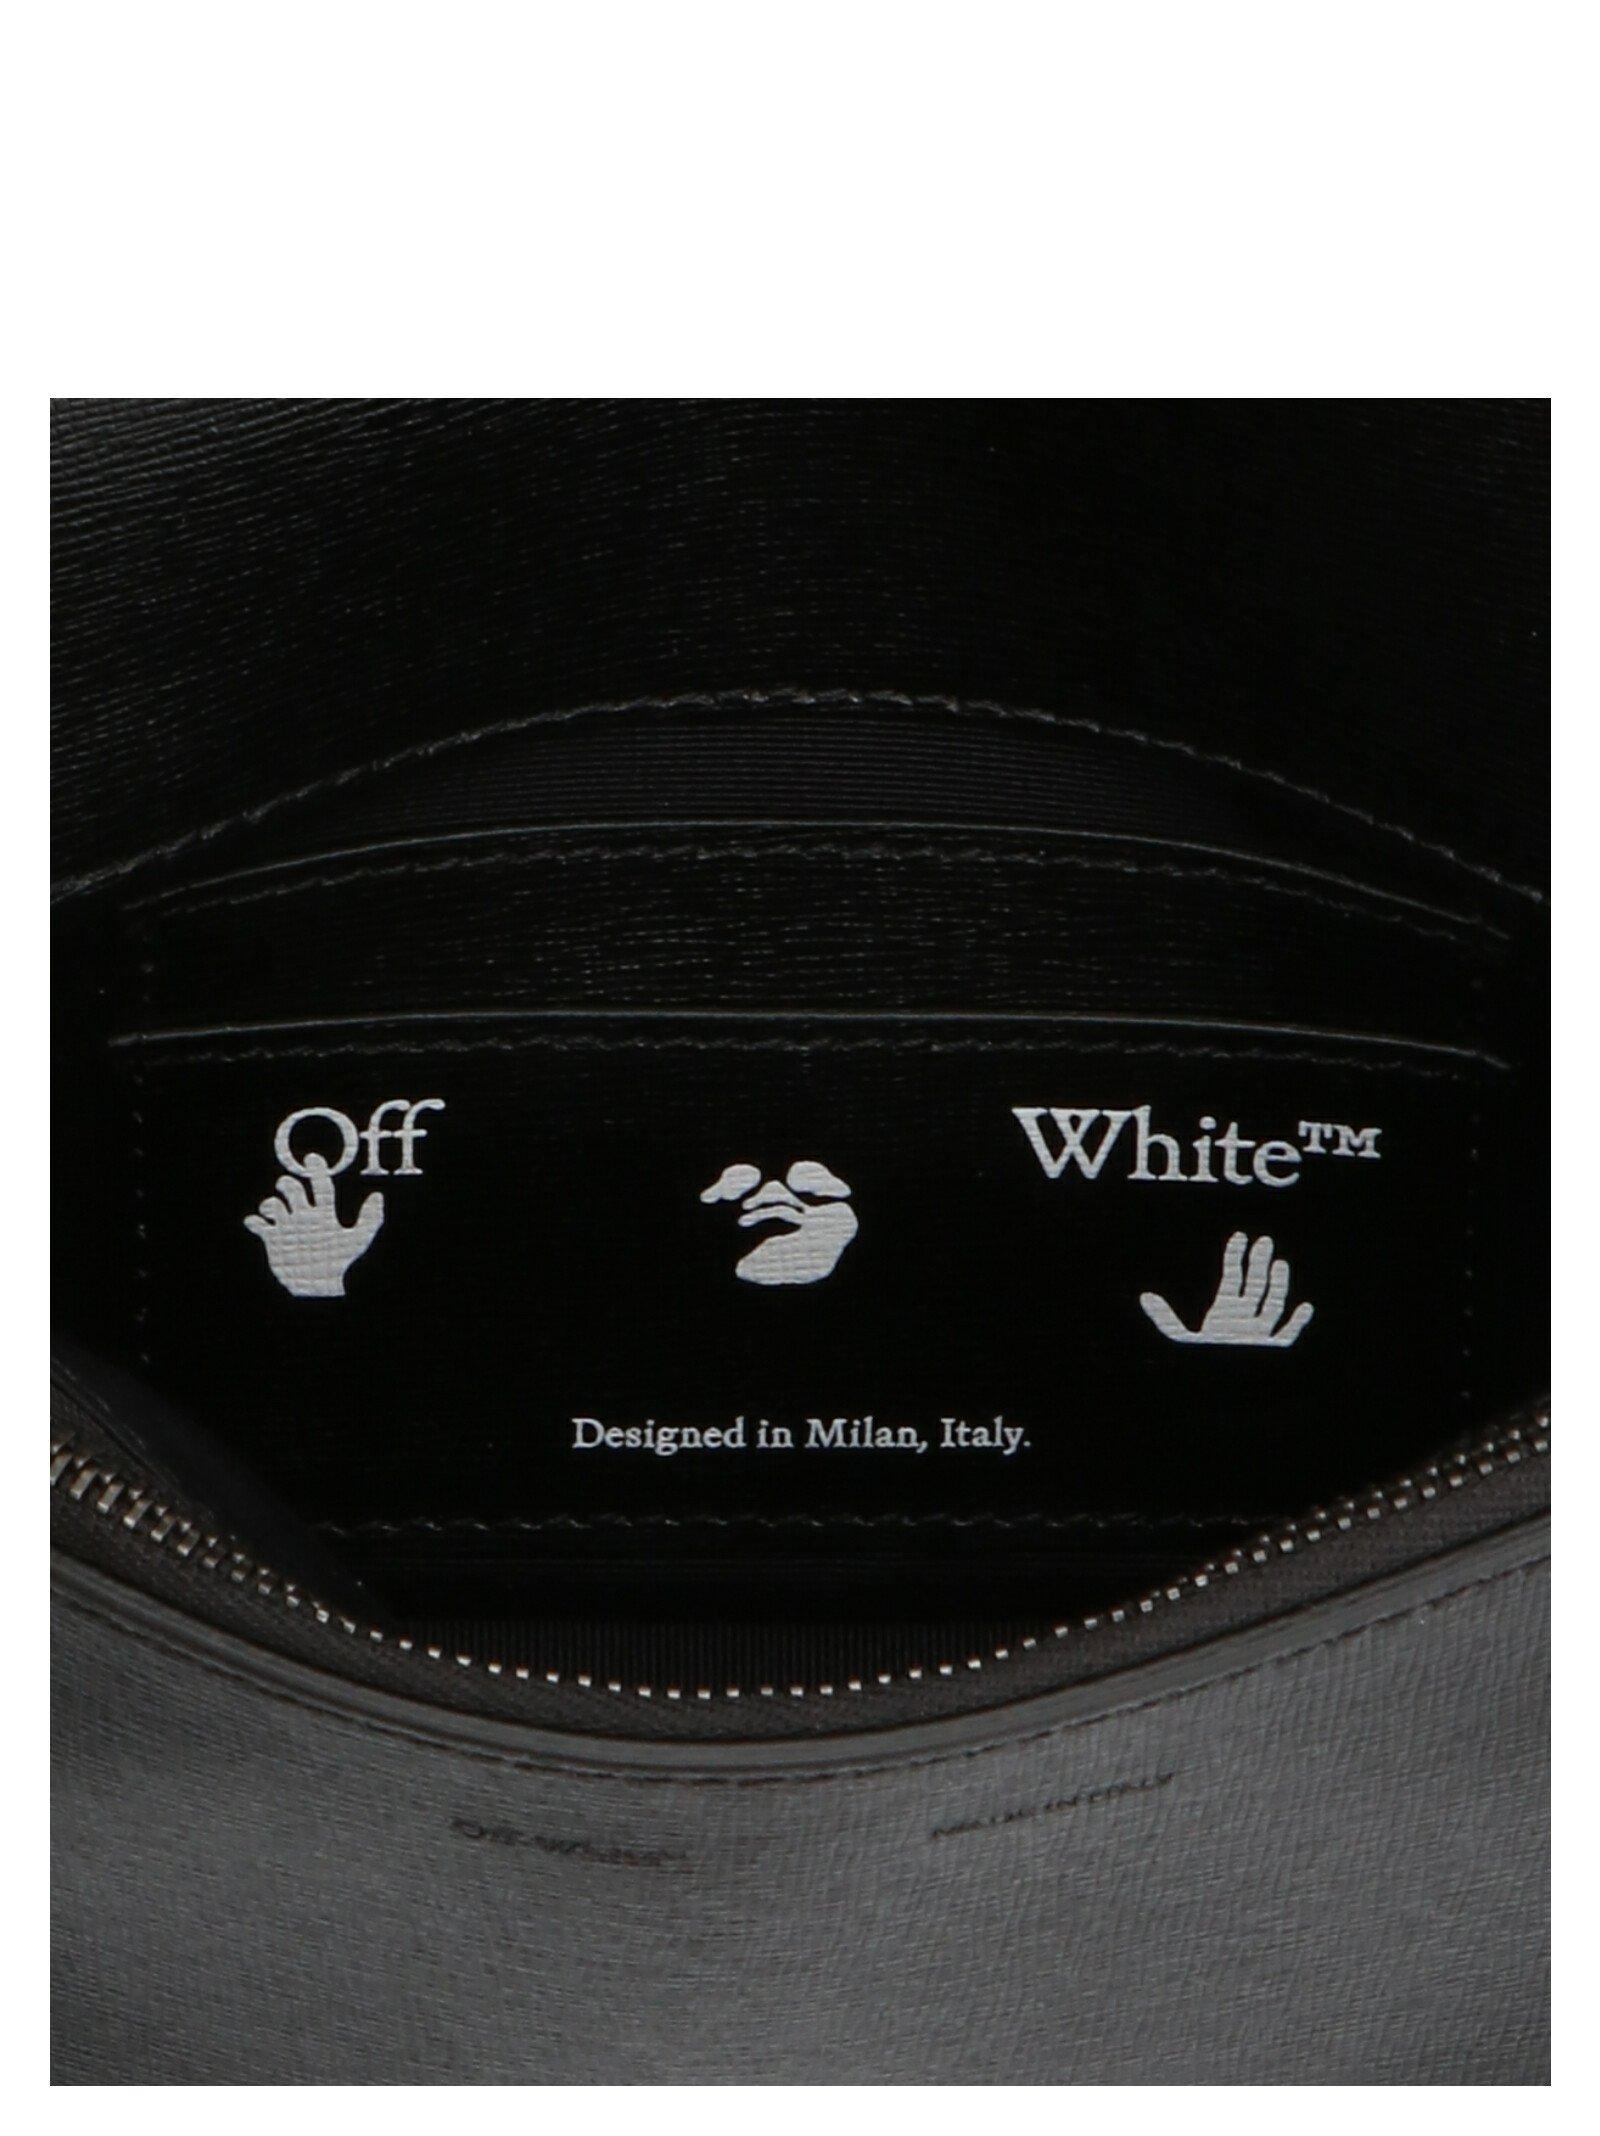 Shoulder bags Off-White - Virgil Abloh™ black diag bag -  OWNA011S184231681001